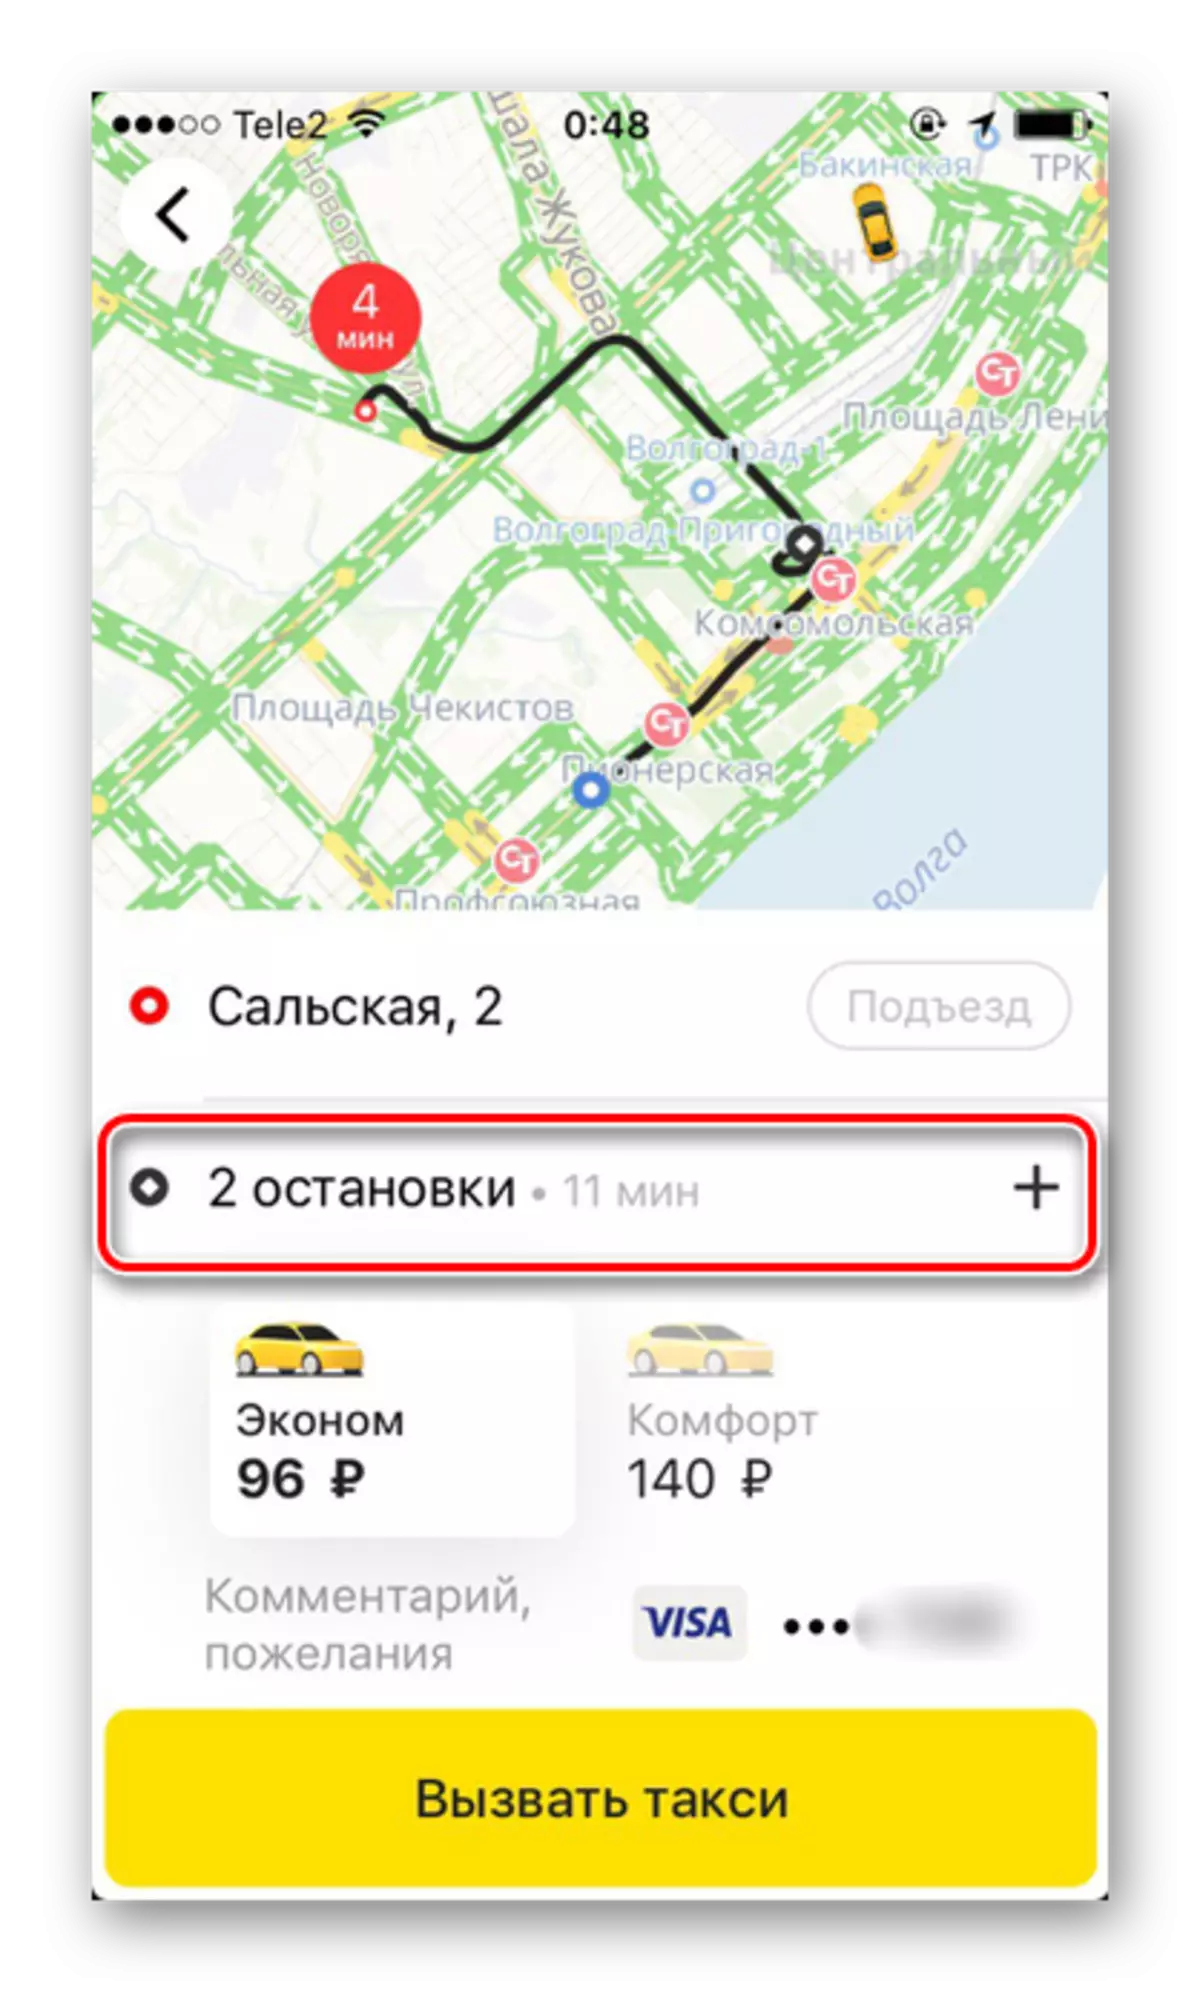 Yandex.taxi ಅಪ್ಲಿಕೇಶನ್ನಲ್ಲಿ ಟ್ಯಾಕ್ಸಿ ಅನ್ನು ಆದೇಶಿಸುವಾಗ ಬಹು ನಿಲ್ದಾಣಗಳೊಂದಿಗೆ ಒಂದು ಸಂಕೀರ್ಣ ಮಾರ್ಗ